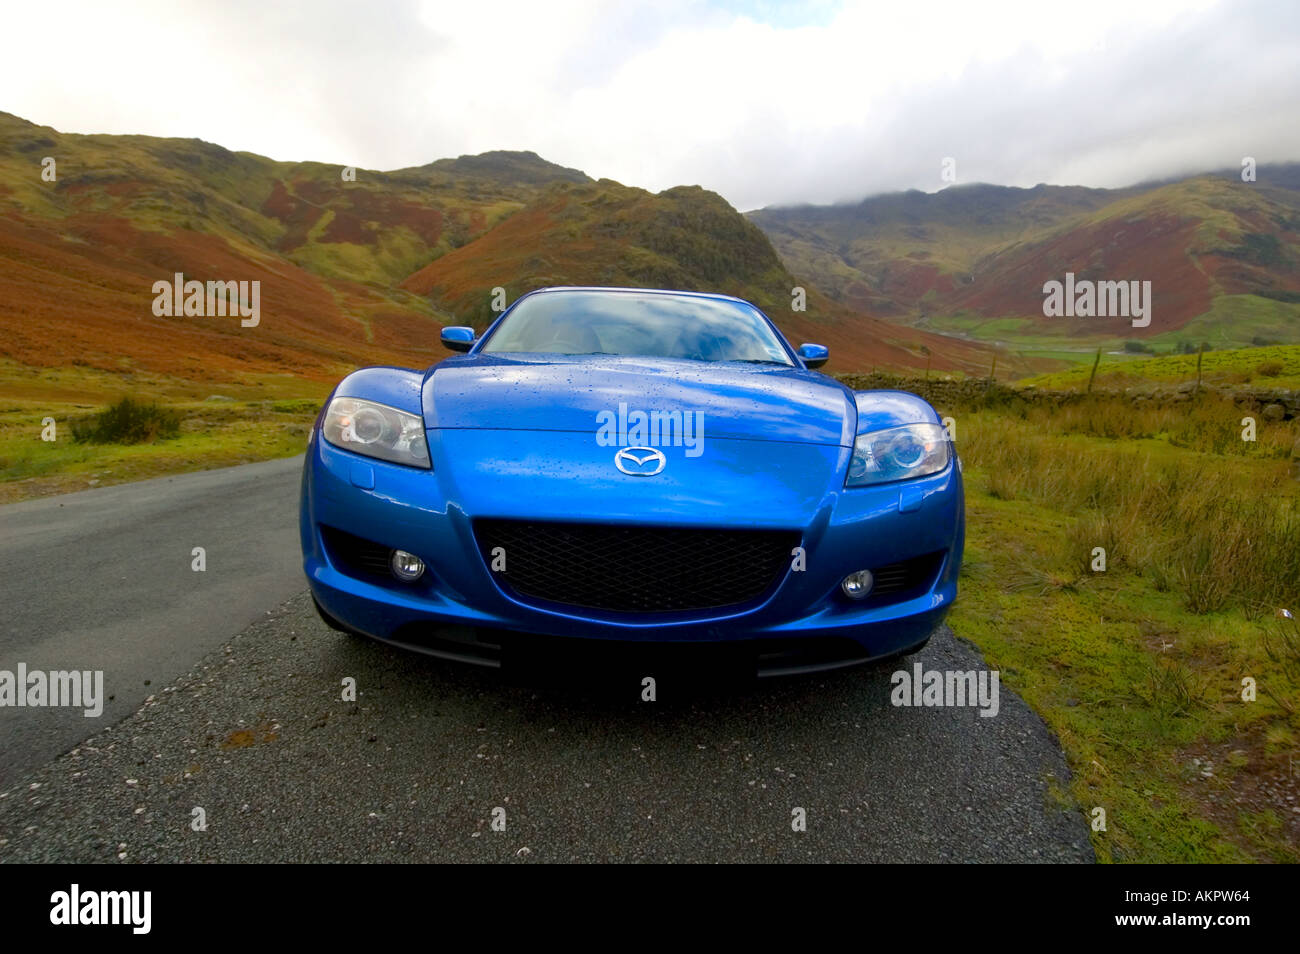 Mazda RX8 In Blue Stock Photo